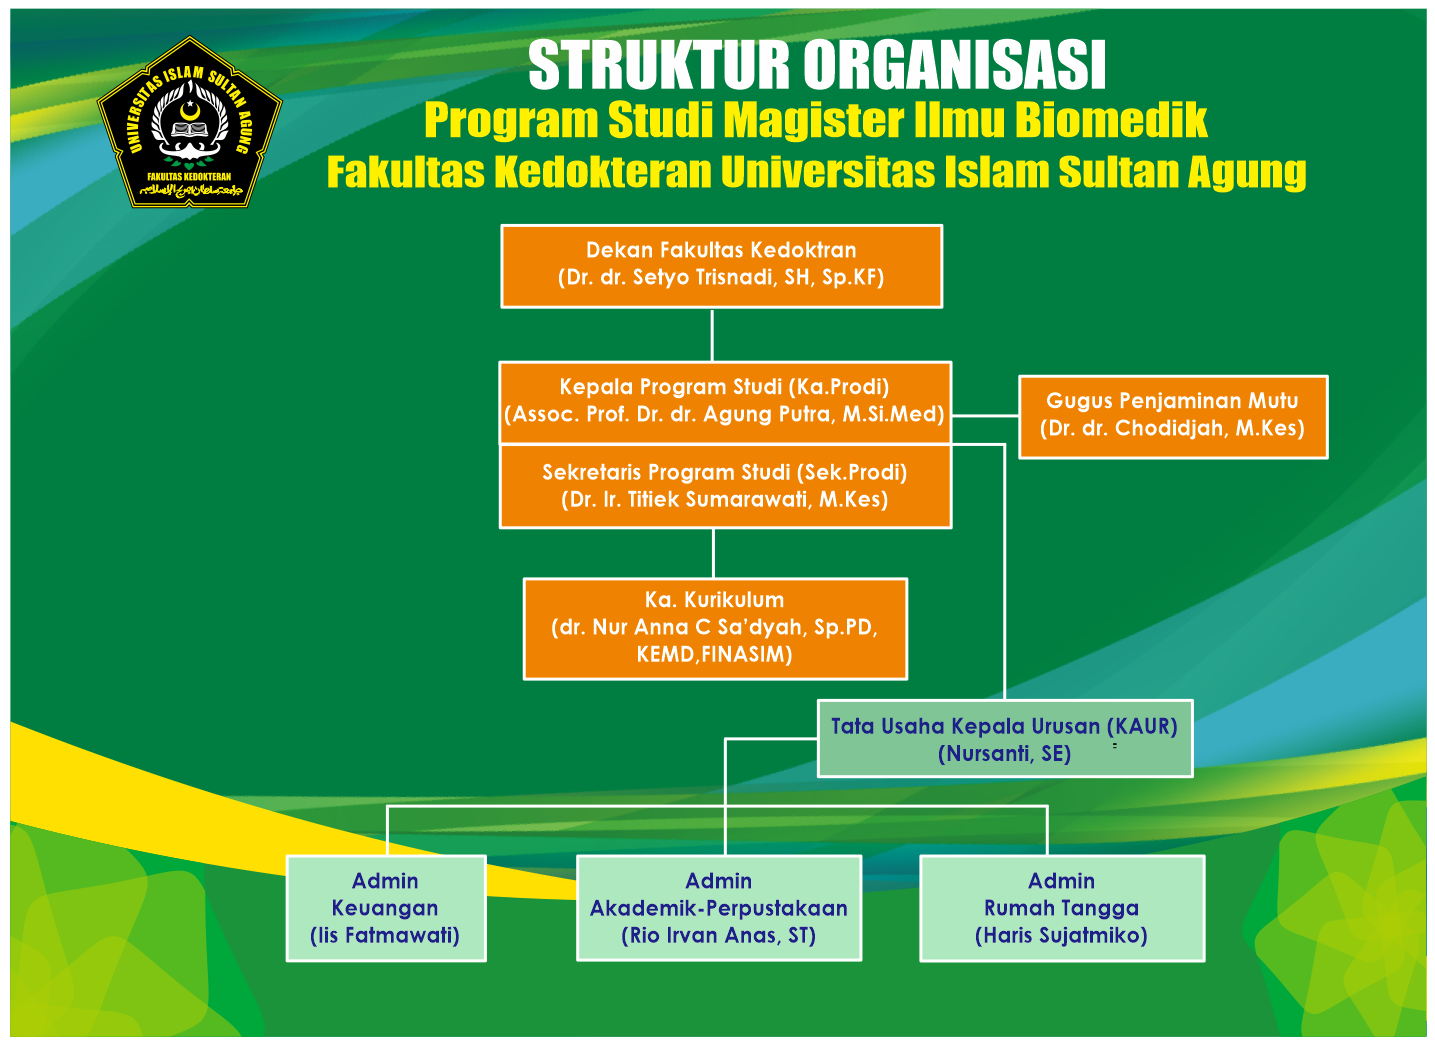 Struktur Organisasi PSMIB